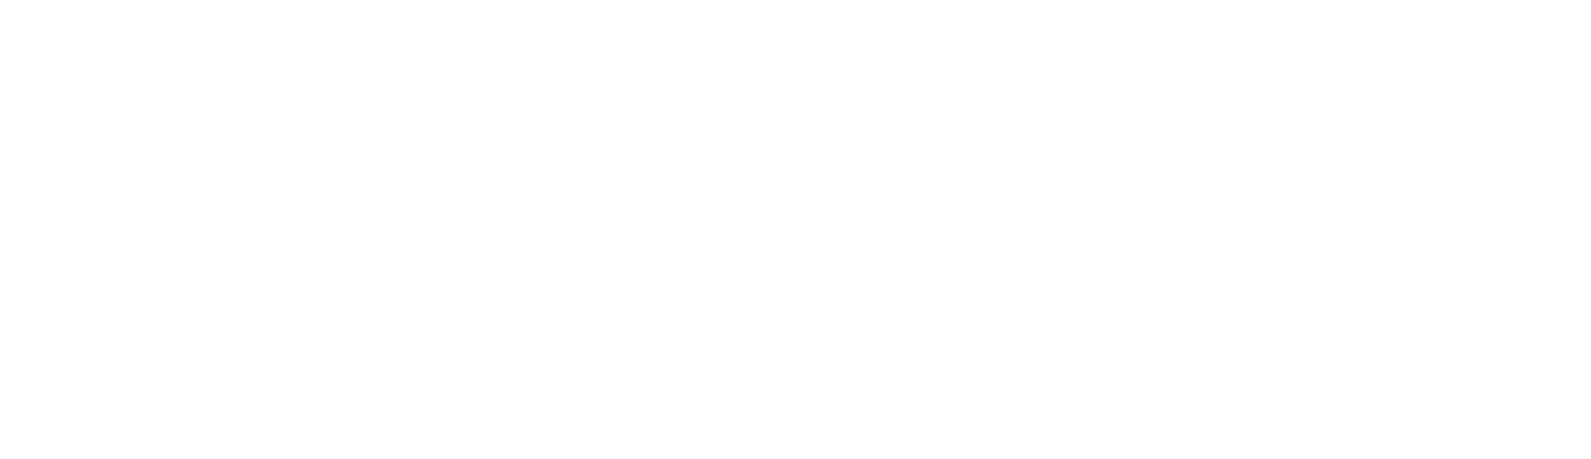 Jobs Ohio Network Partner